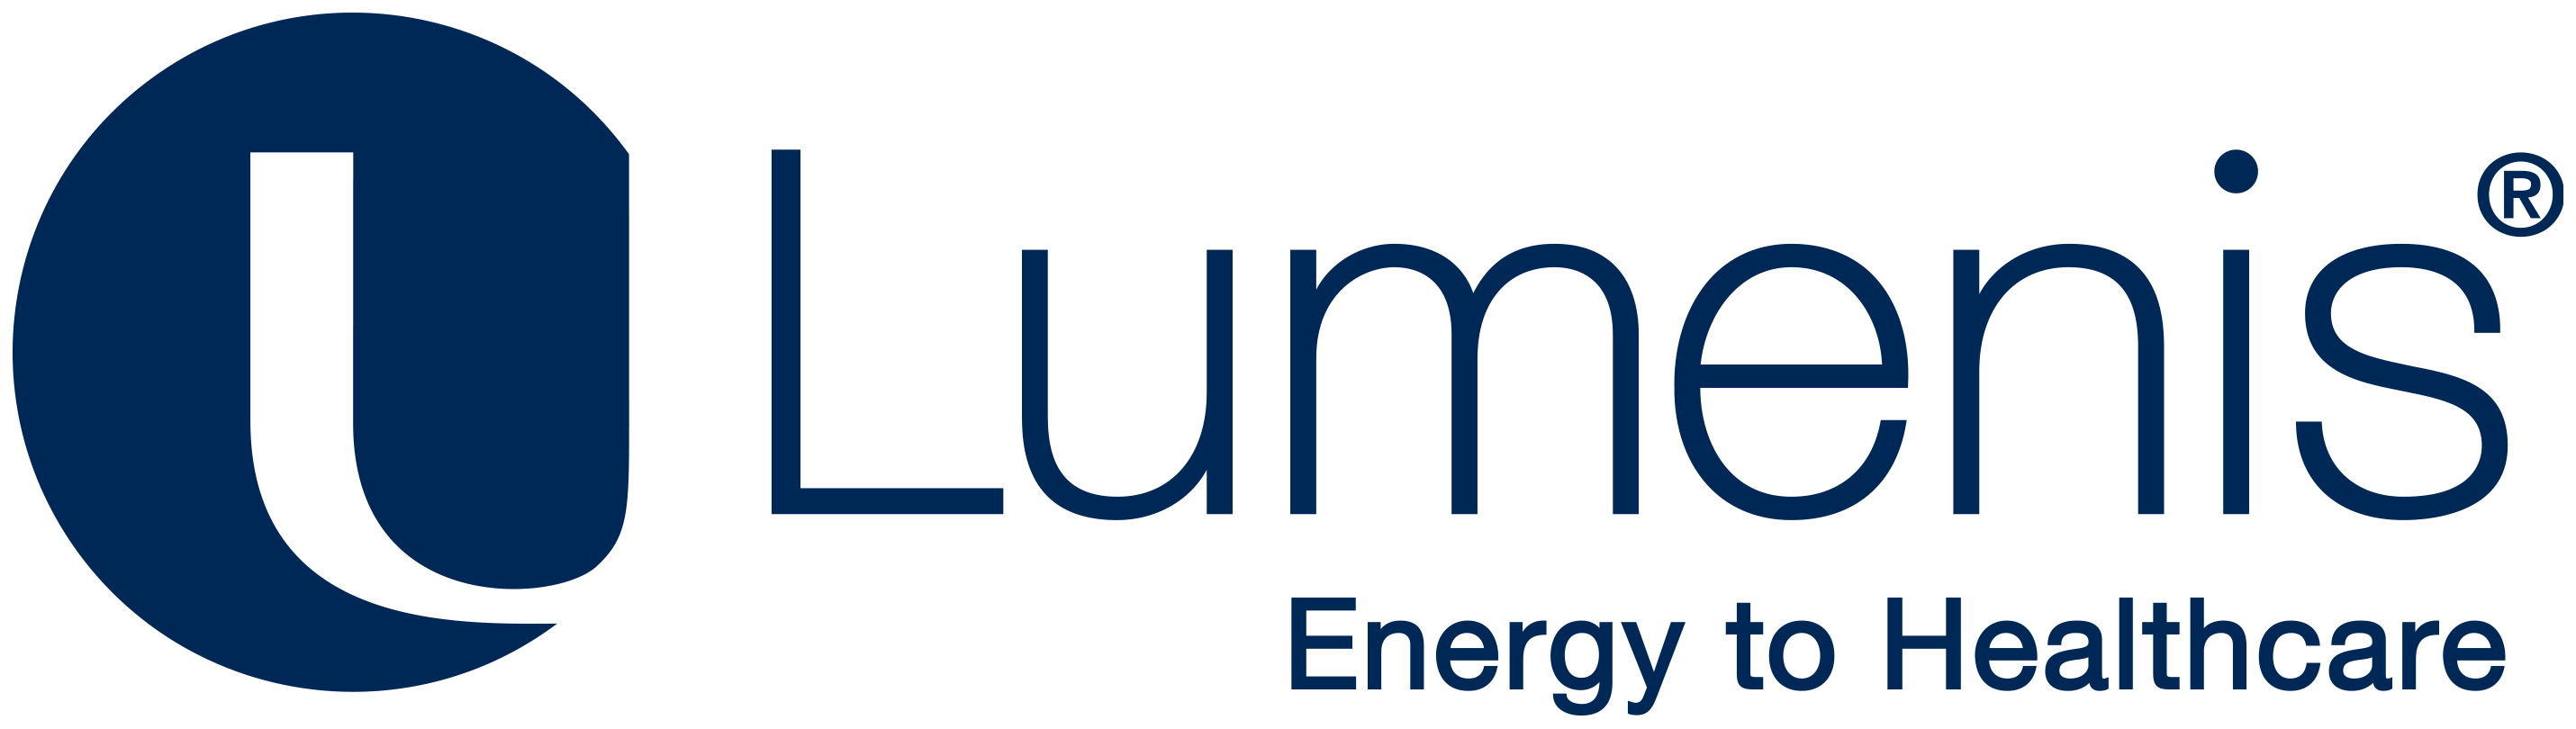 Lumenis_logo